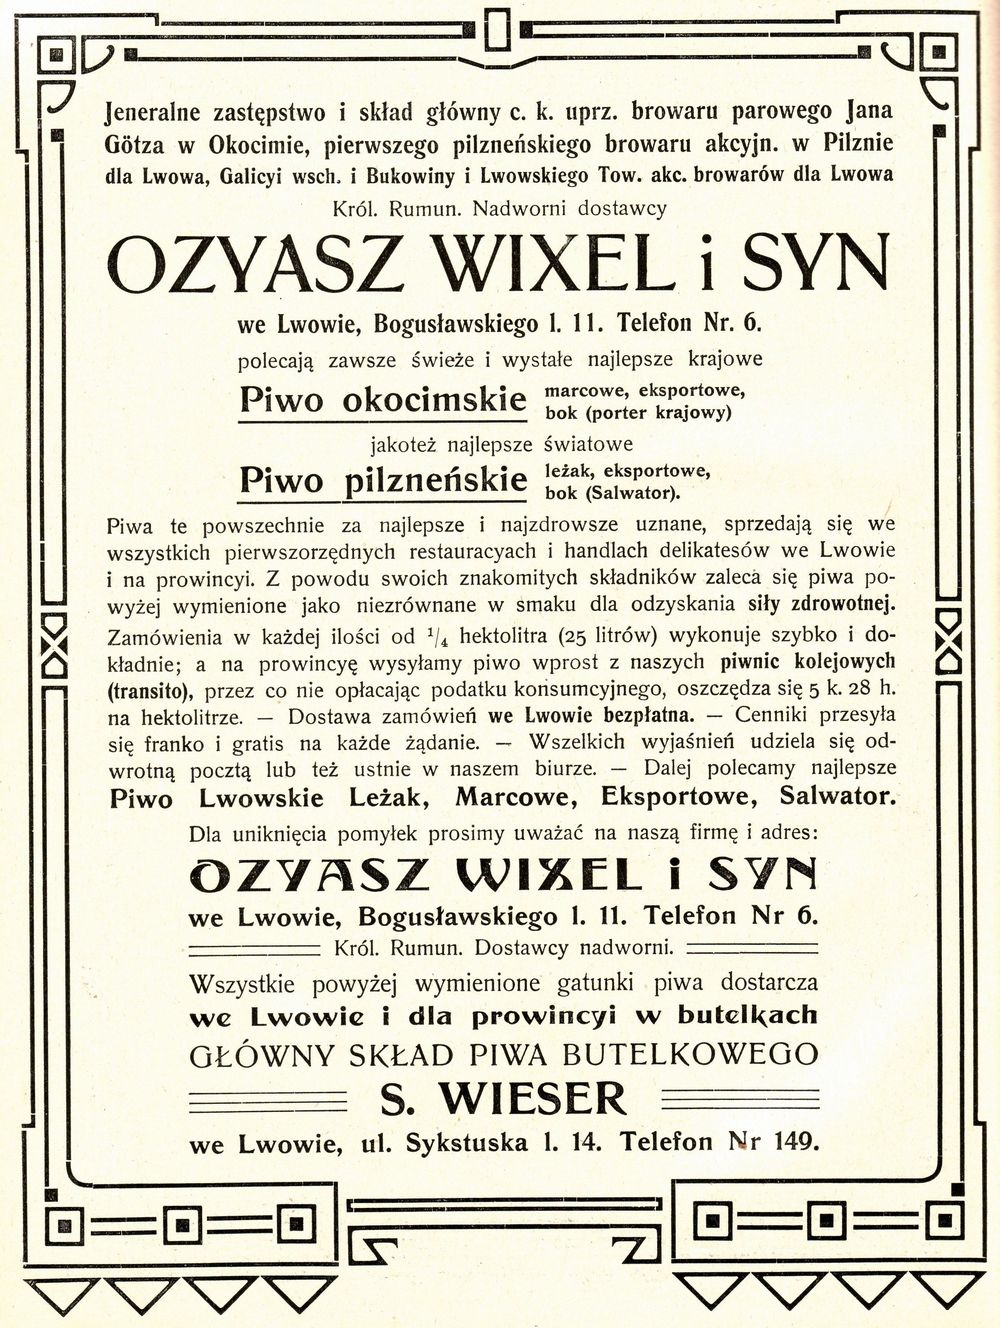 Reklama generalnego zastępstwa i składu głównego browarów Ozyasz Wixel